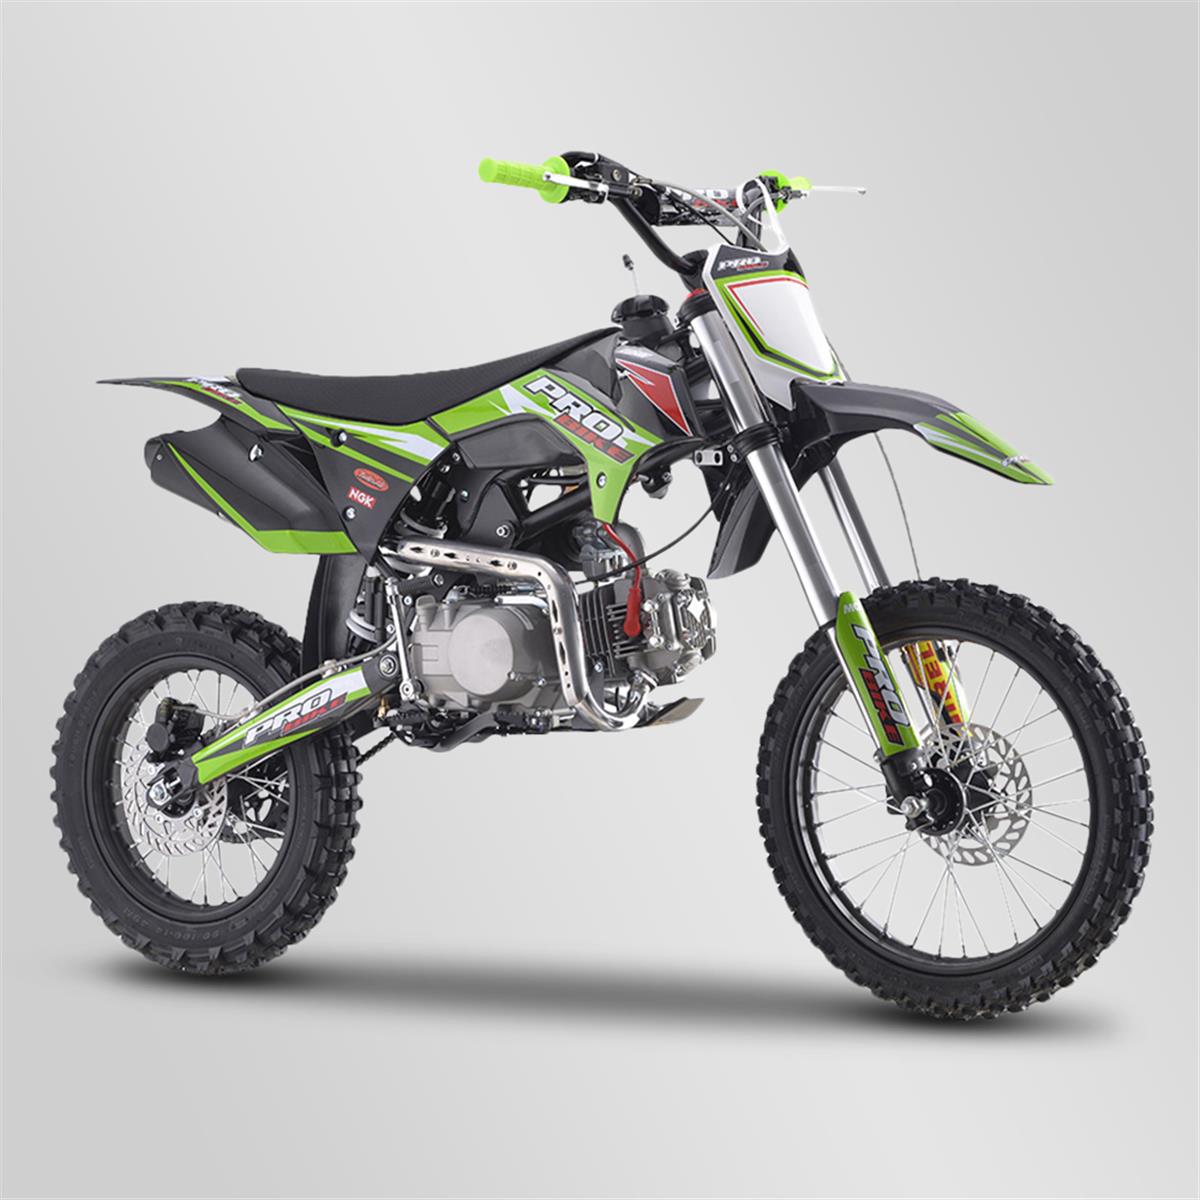 Dirt bike, pit bike Probike 140cc 14/17 vert 2021 | Smallmx - Dirt bike,  Pit bike, Quads, Minimoto